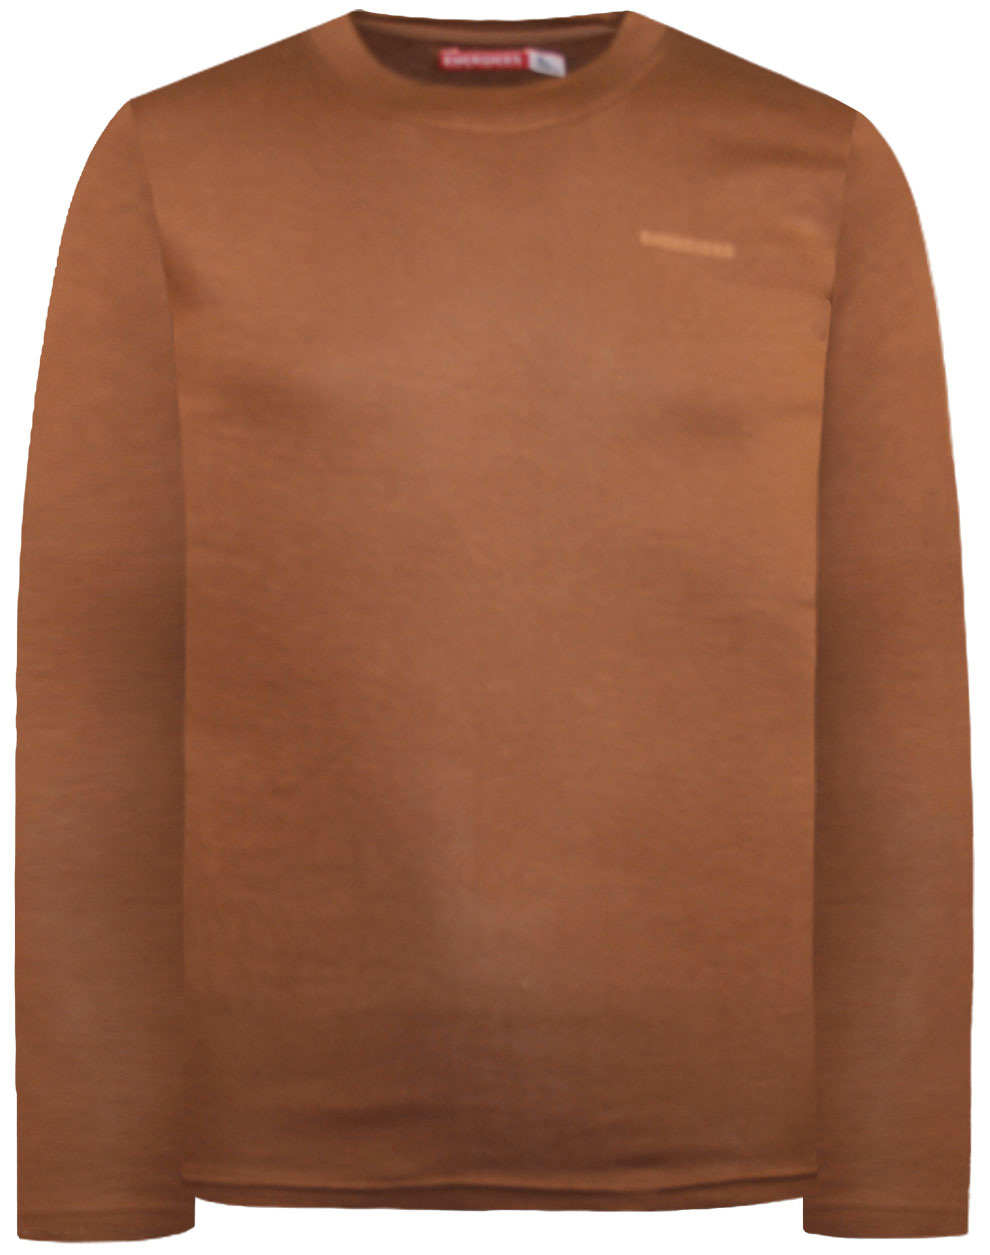 Βαμβακερή μπλούζα με λαιμόκοψη Energiers Basic Line για αγόρι | ΚΑΦΕ ΑΓΟΡΙ 6-16>Μπλούζα